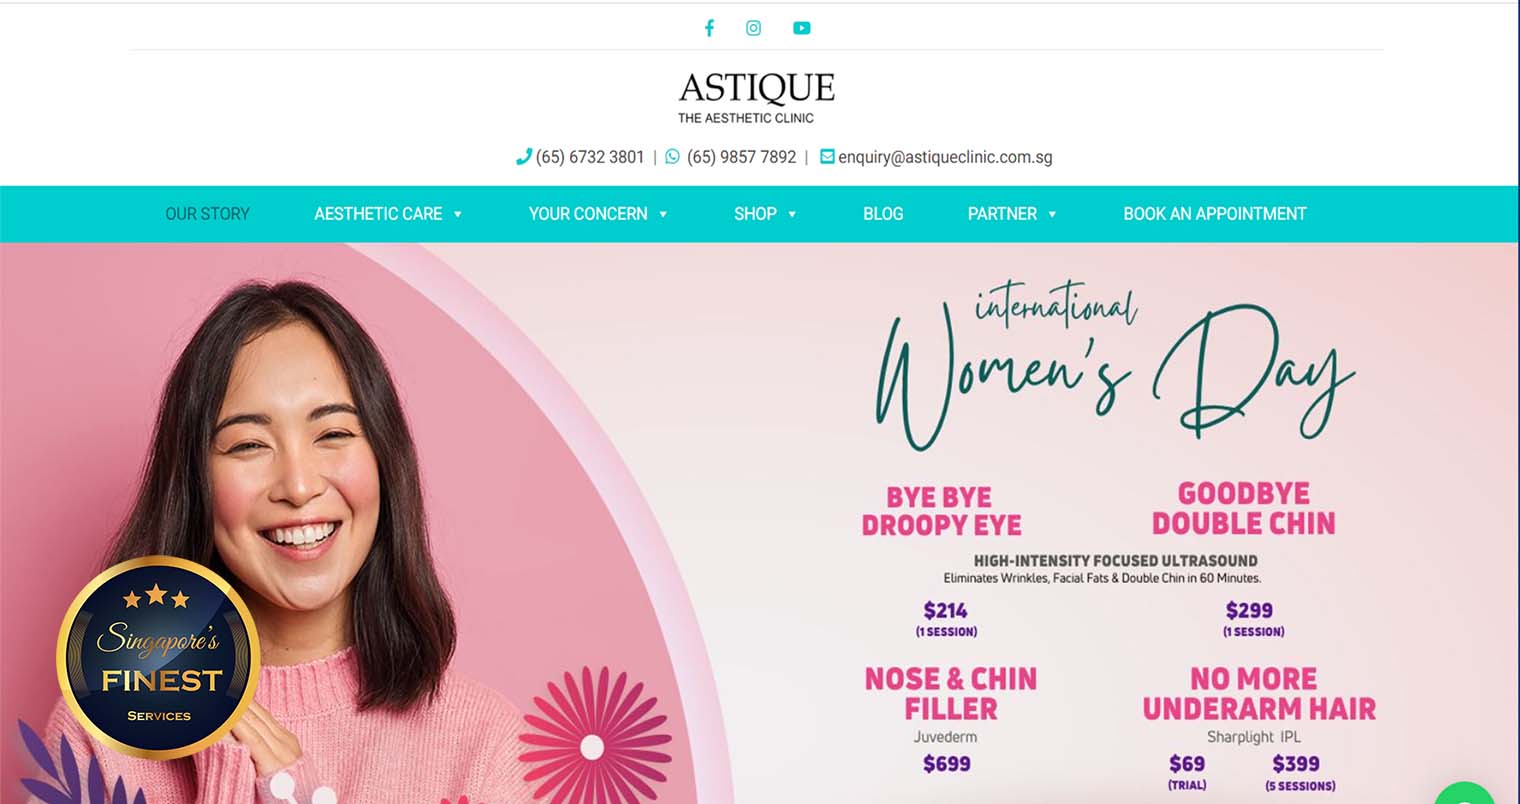 Astique - Aesthetic Clinics Singapore